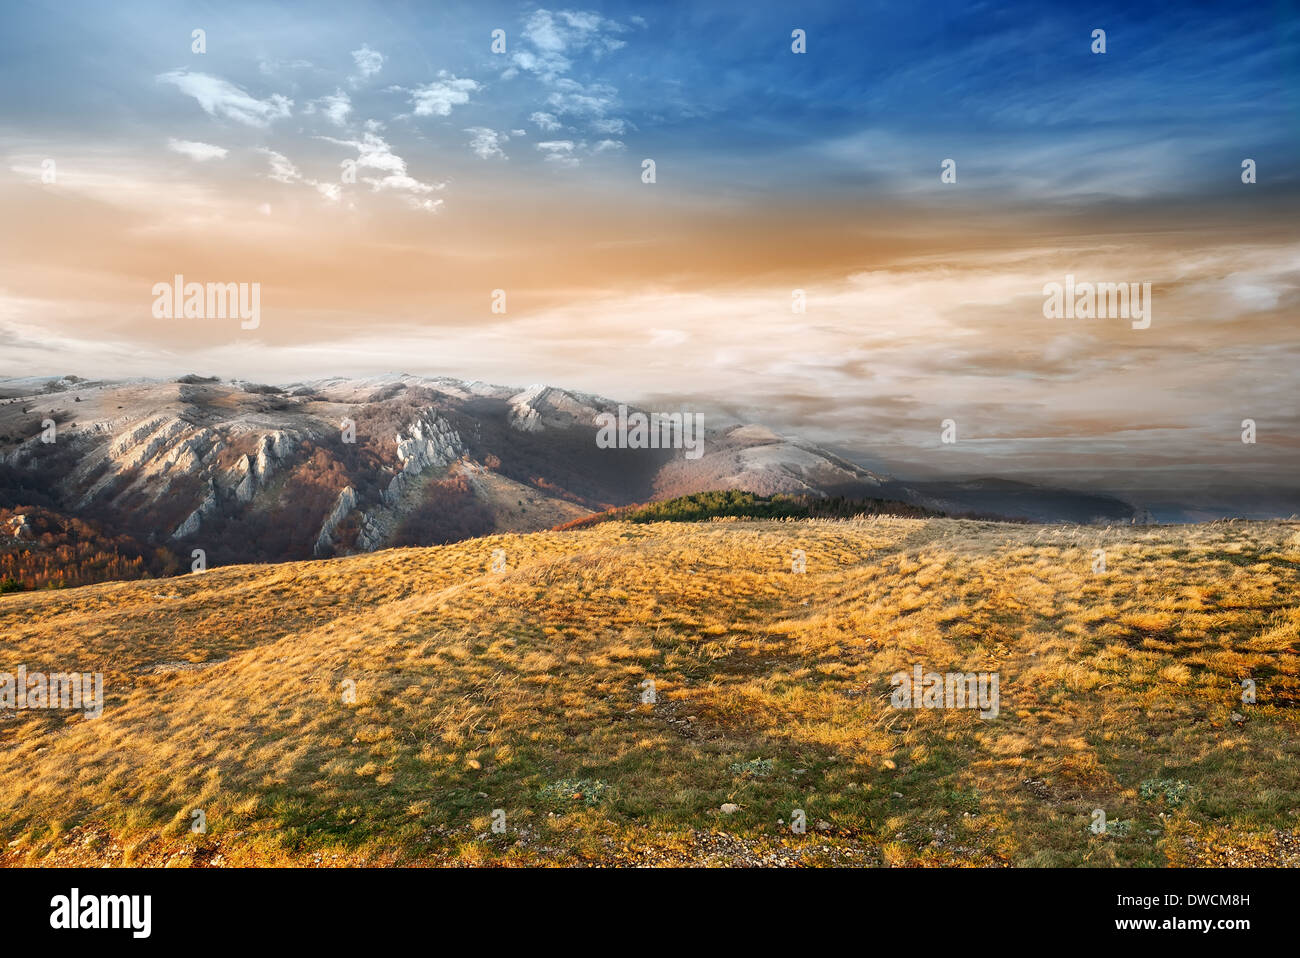 La fin de l'automne dans les montagnes au coucher du soleil Banque D'Images